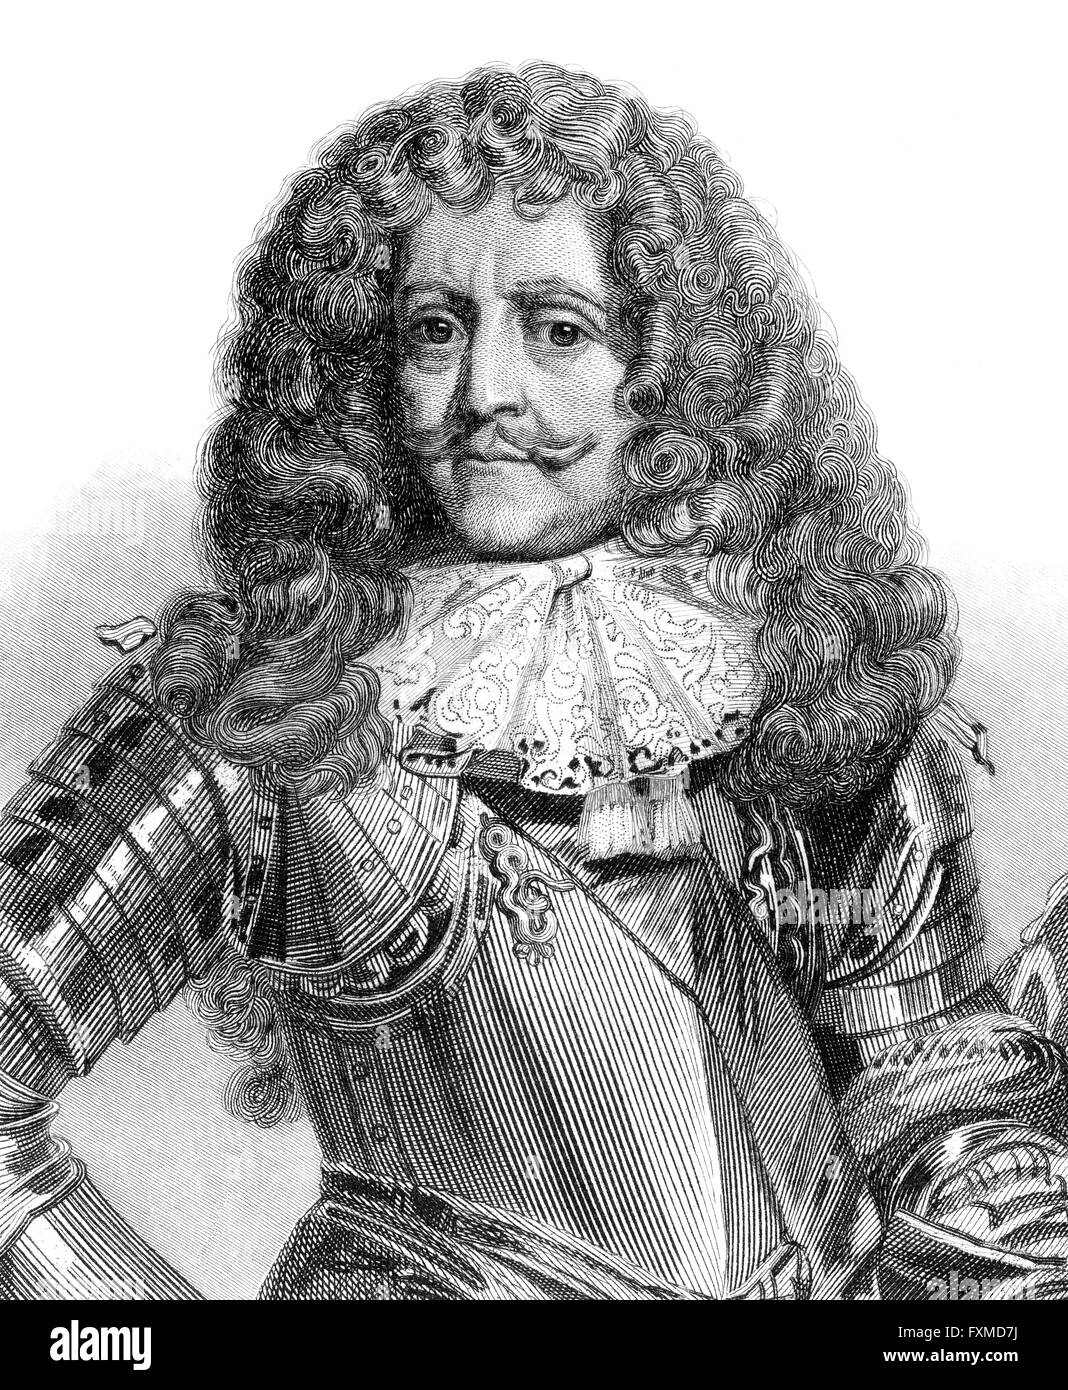 Antoine III Agénor de Gramont, Herzog von Gramont, 1604-1678, ein französischer Soldat und Diplomat, Marschall von Frankreich Stockfoto